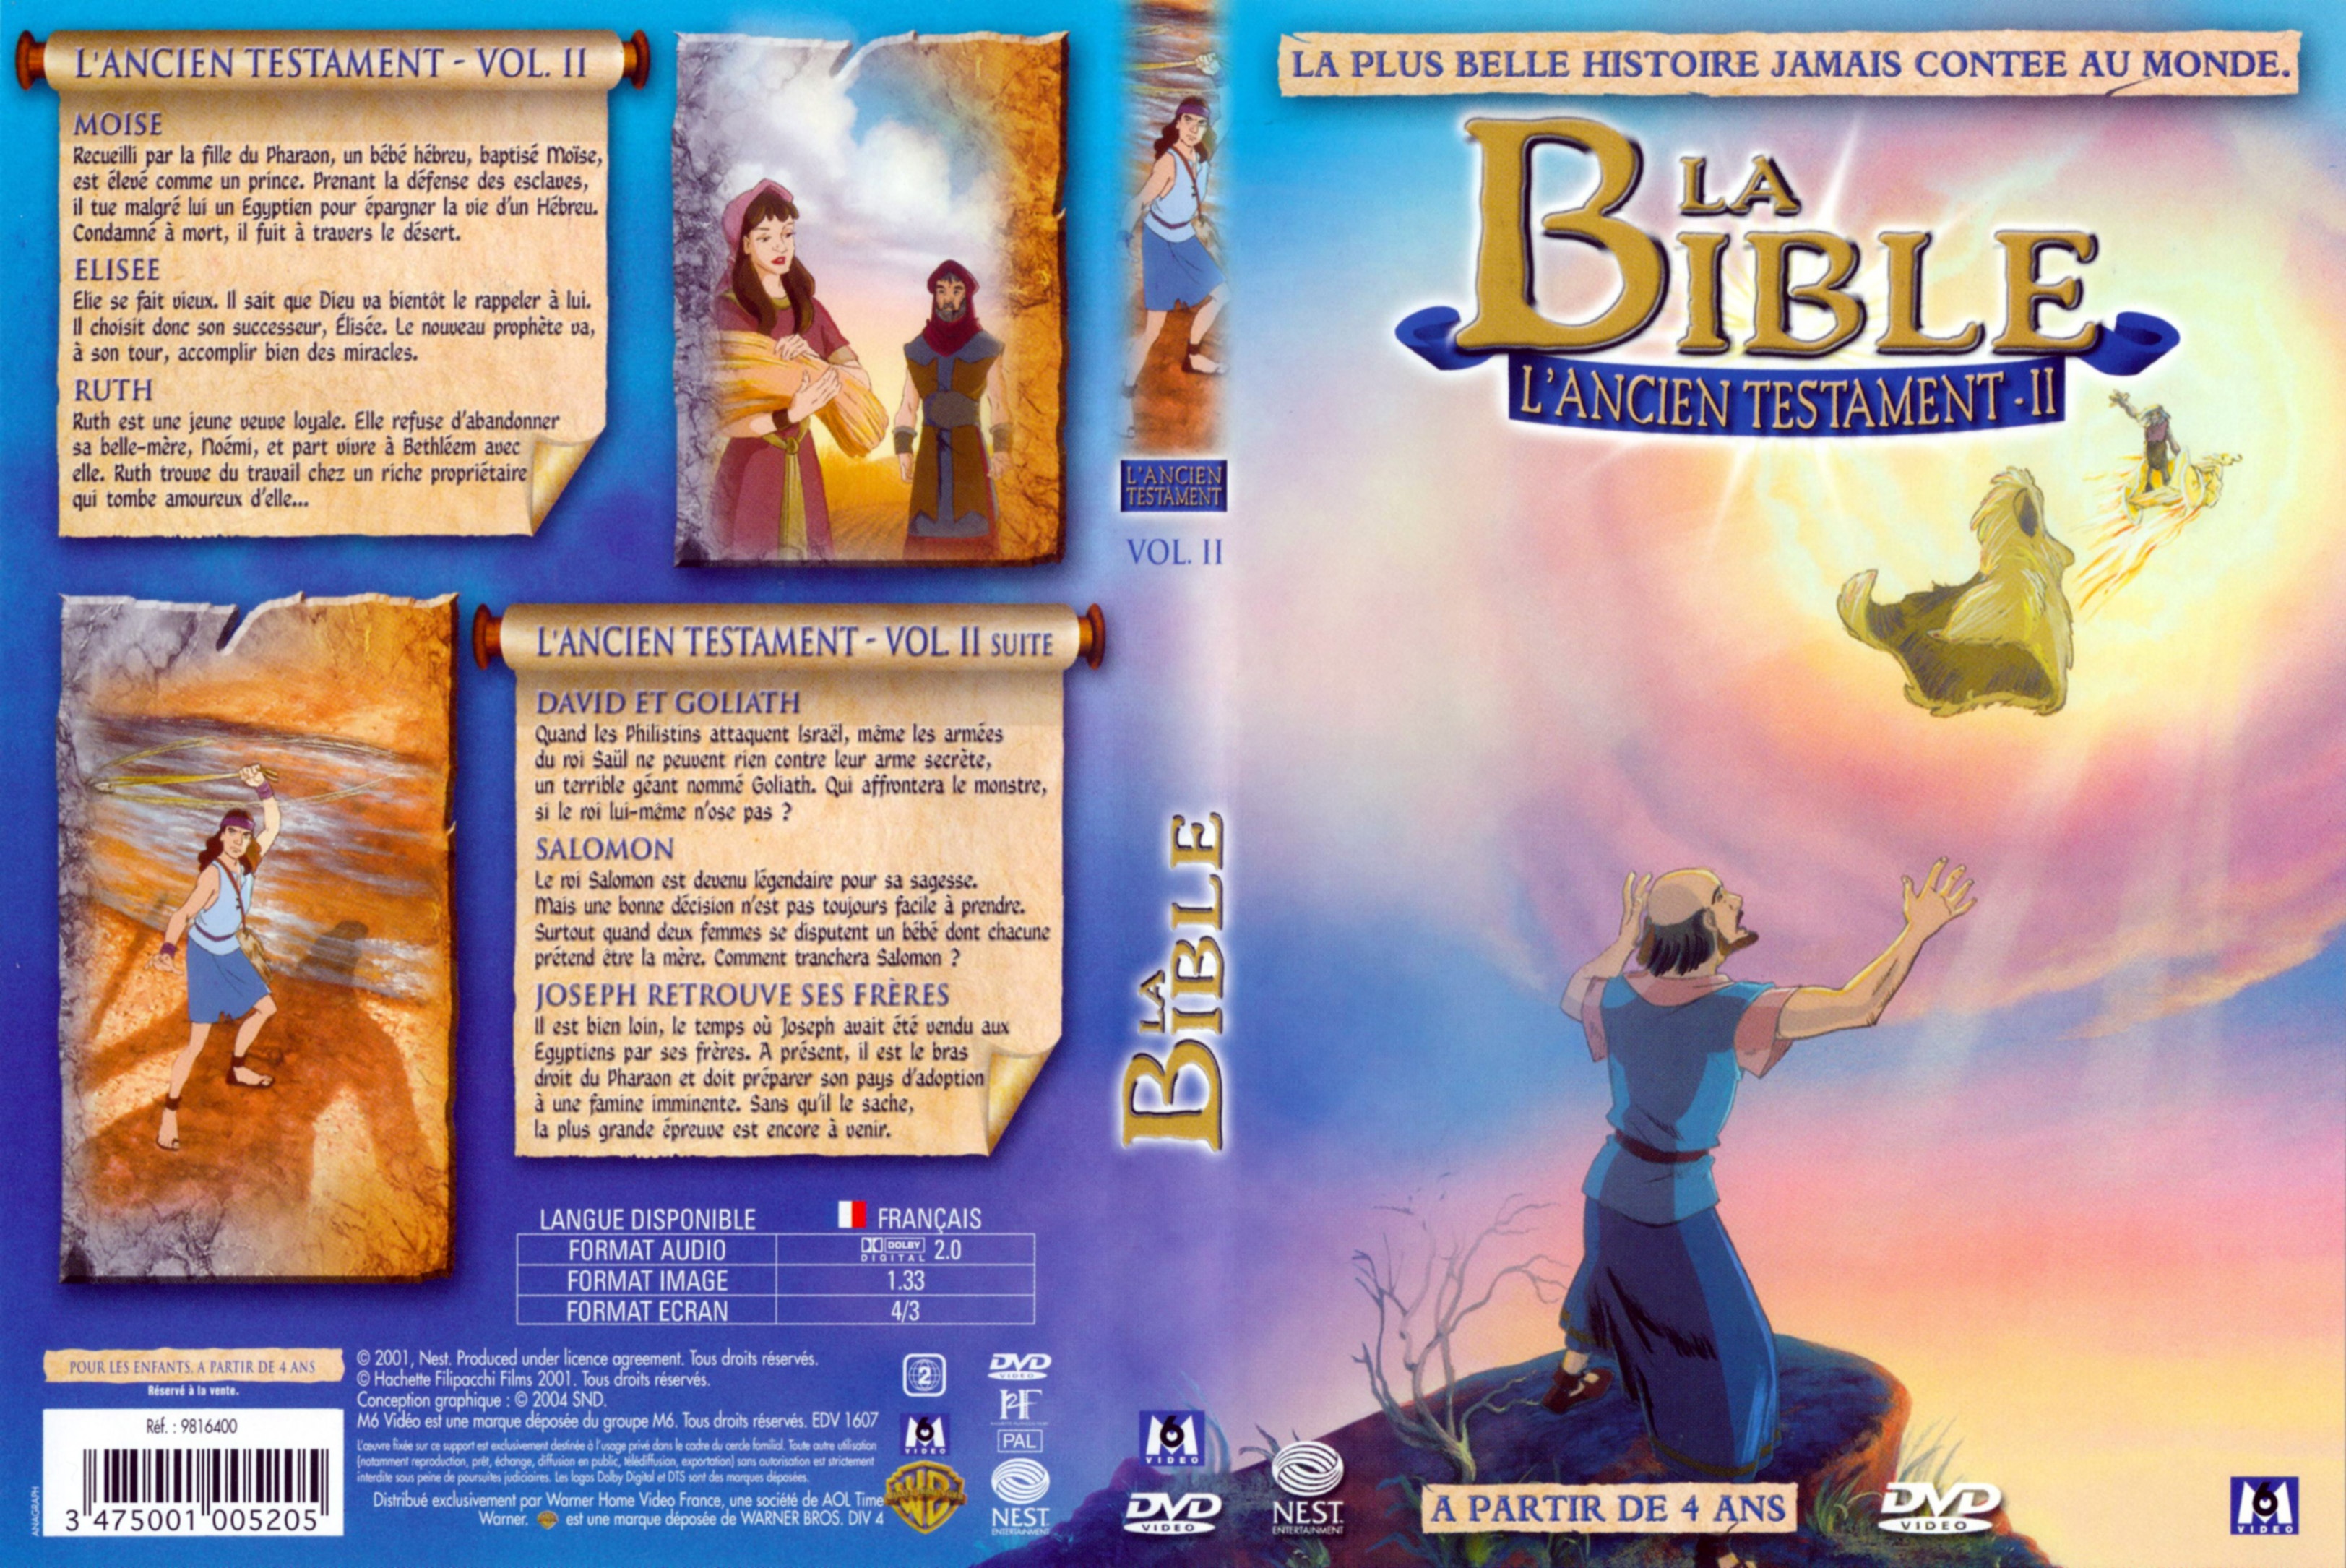 Jaquette DVD La bible l